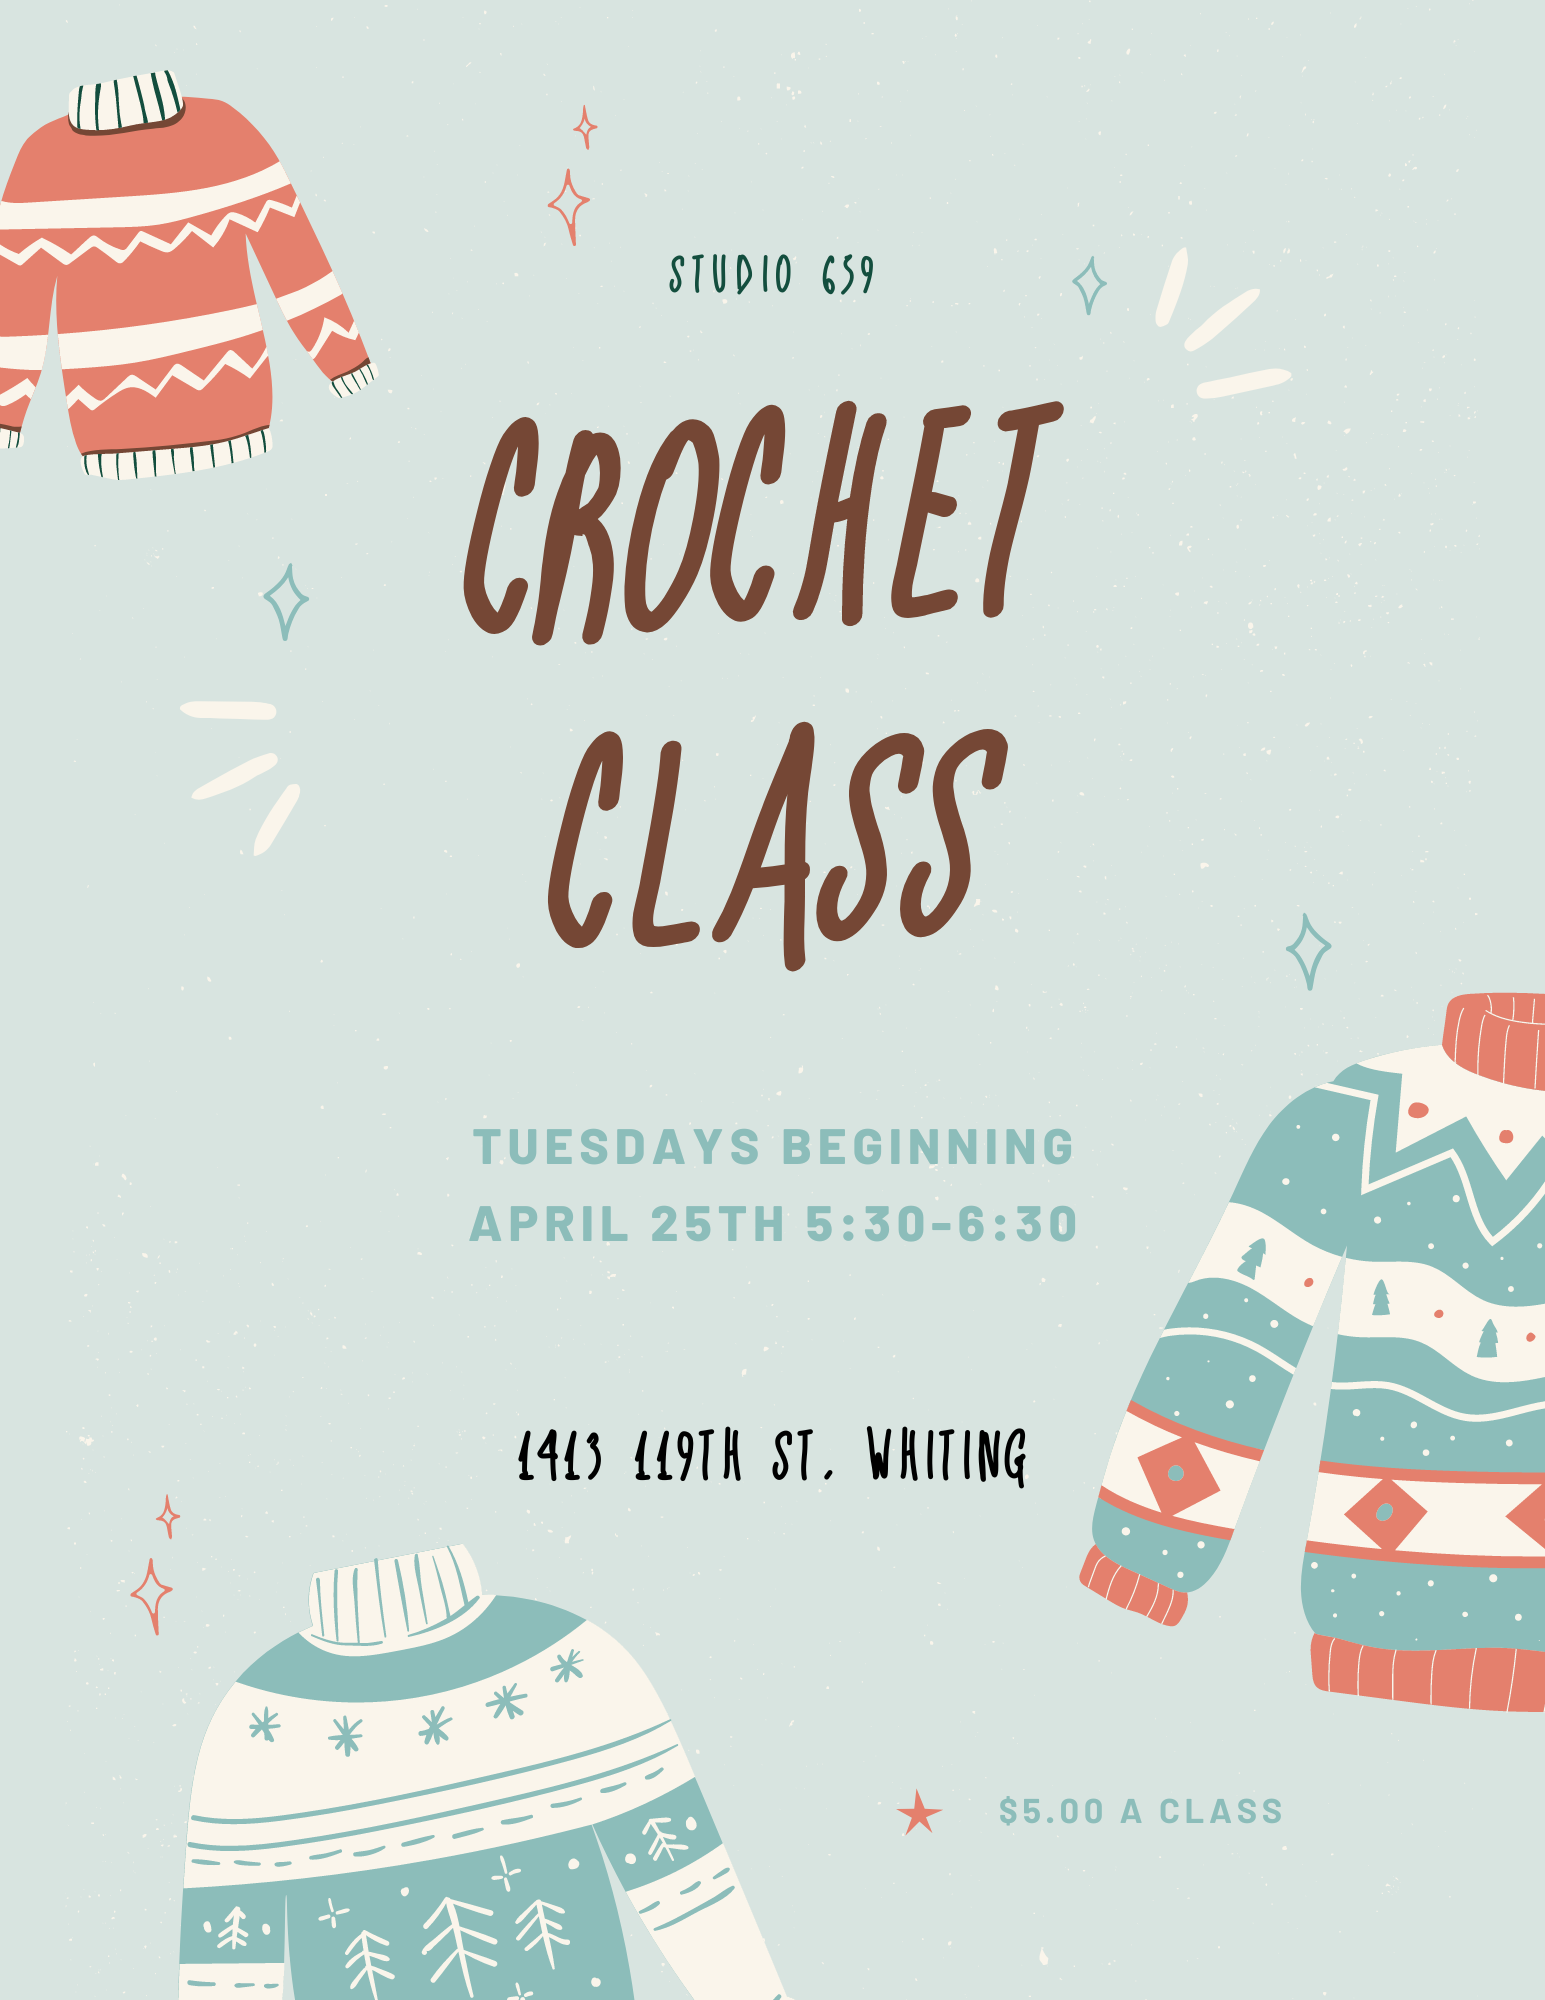 Crochet Class